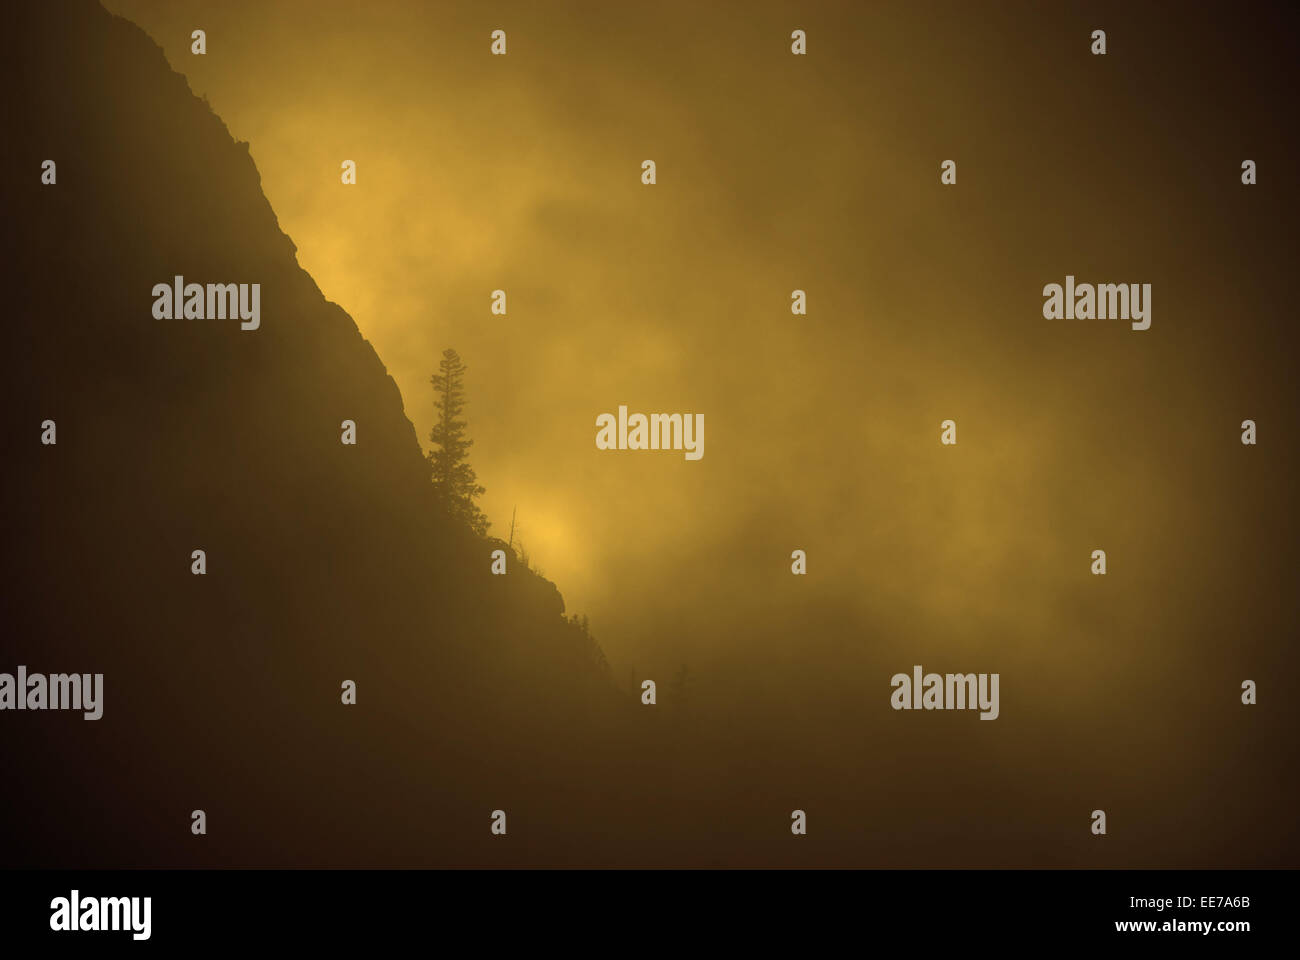 La nebbia, luce calda del sole e pino sulle aspre montagne durante la tempesta Foto Stock